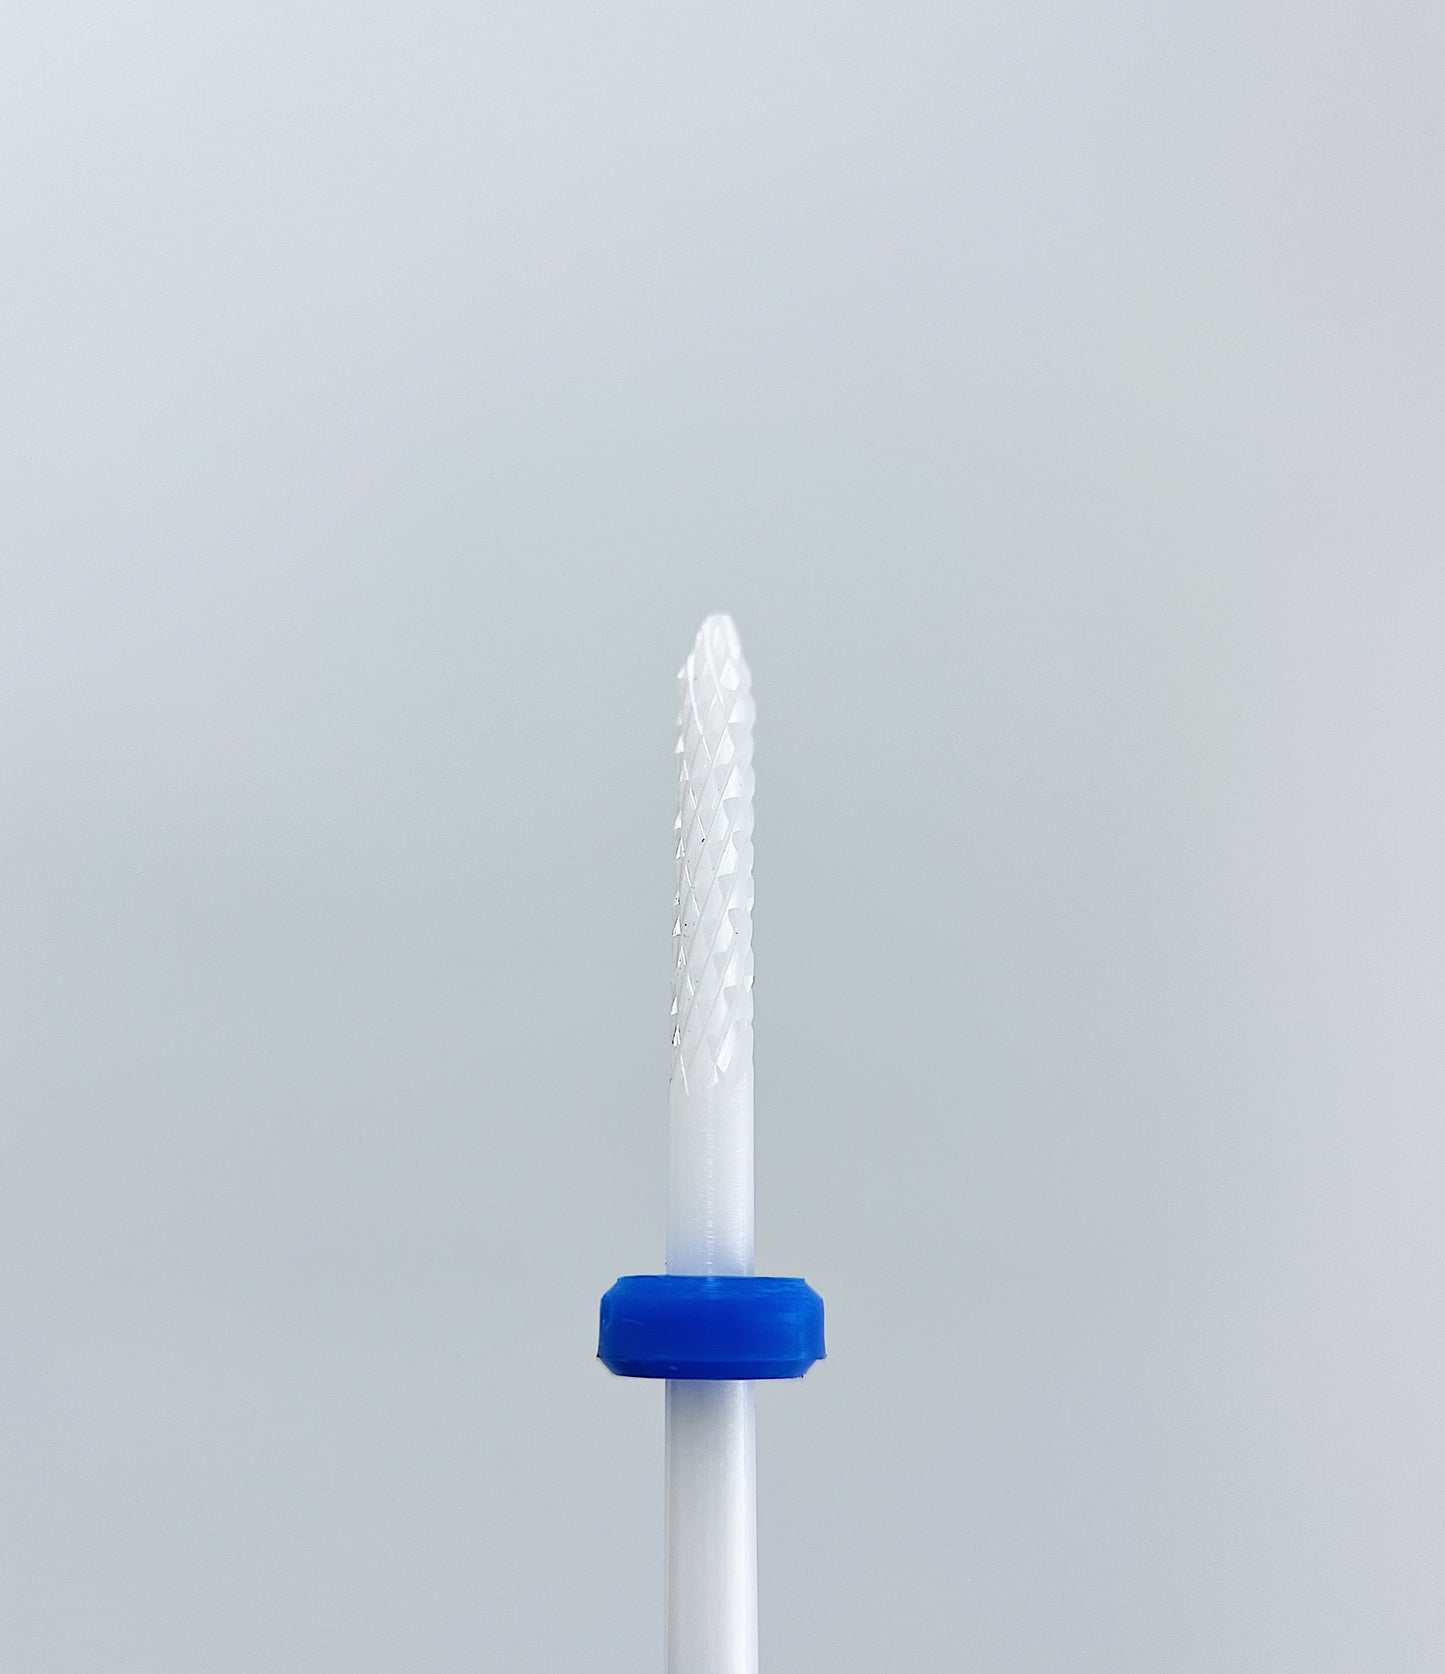 Ceramic nail drill bit, “Needle”, 2.3*14 mm, Blue